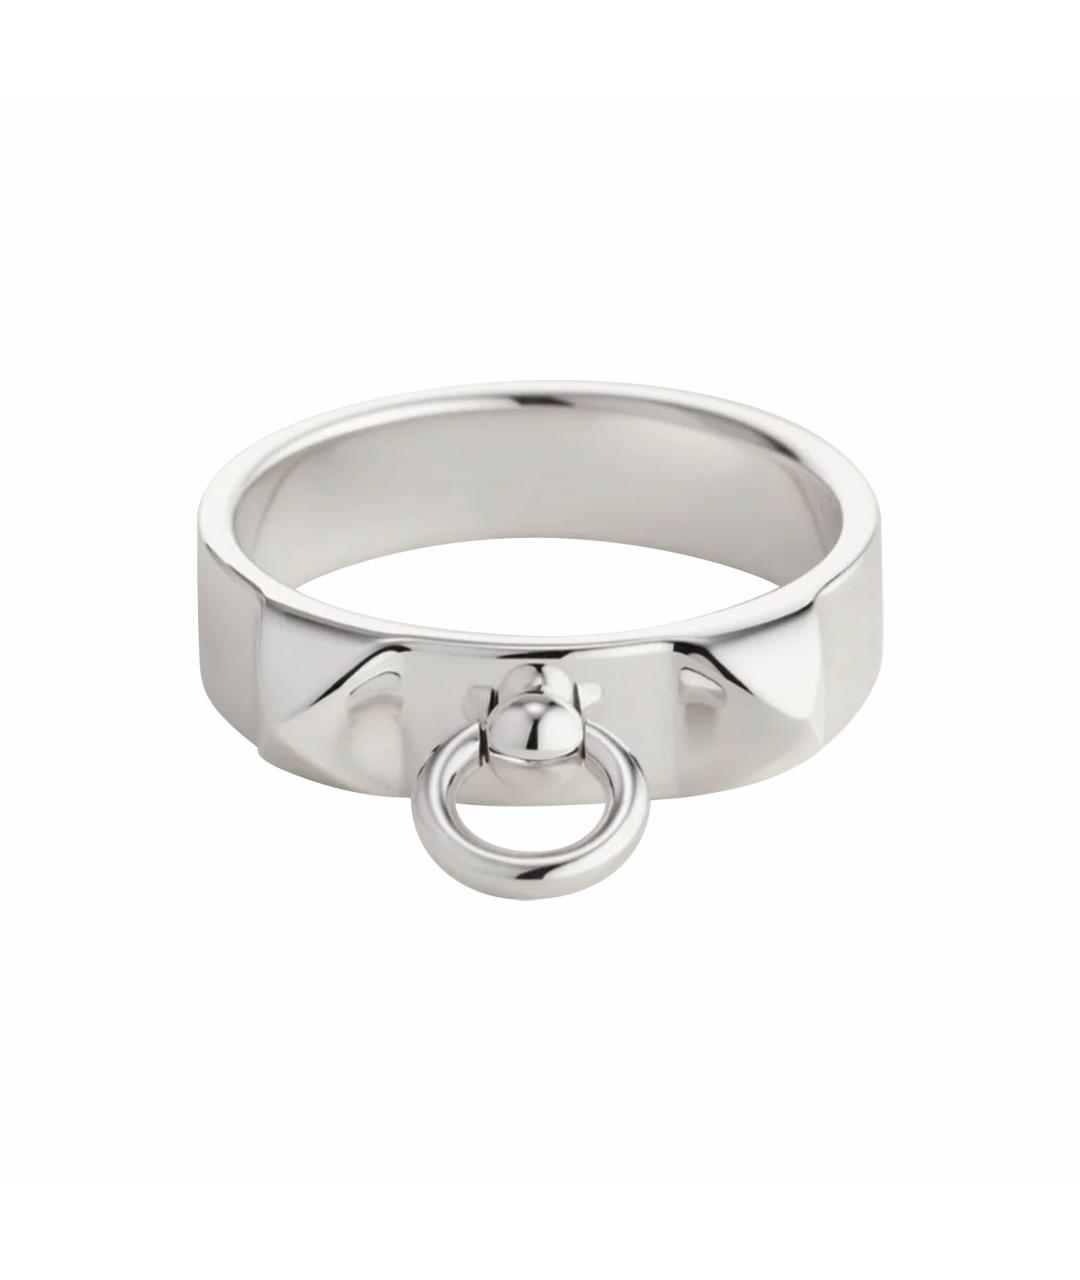 HERMES PRE-OWNED Серебряное серебряное кольцо, фото 1